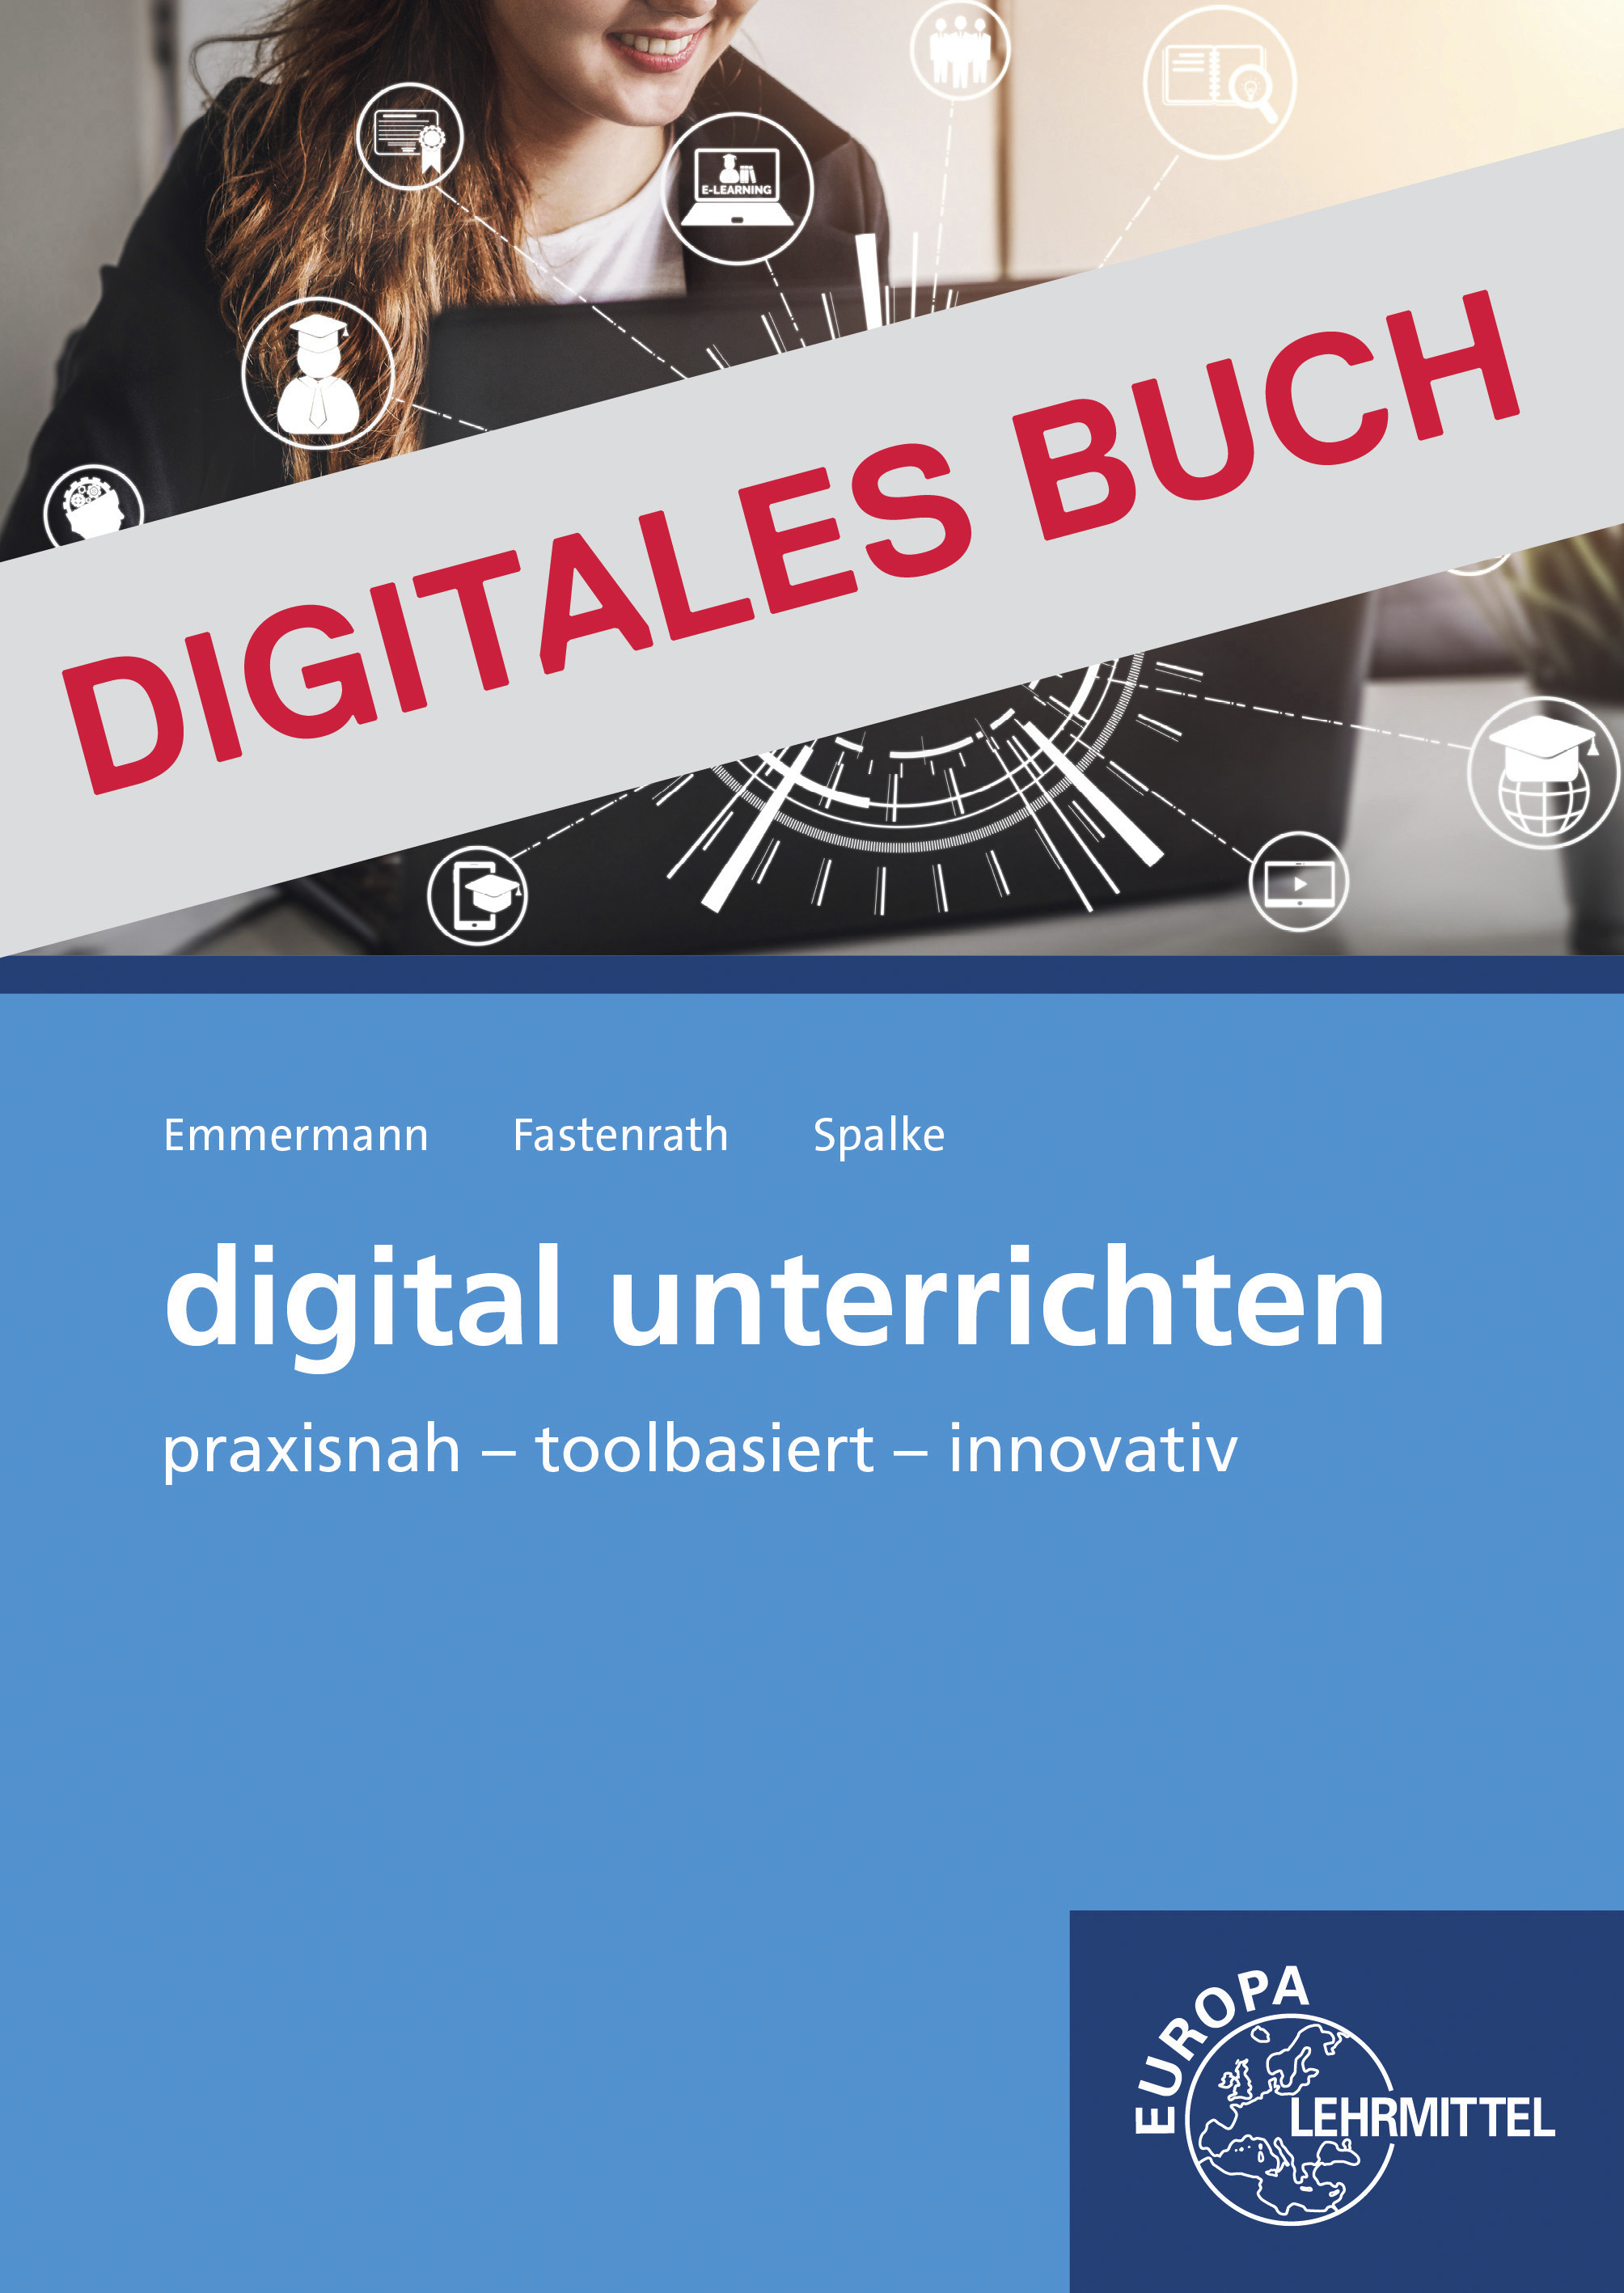 digital unterrichten - Digitales Buch